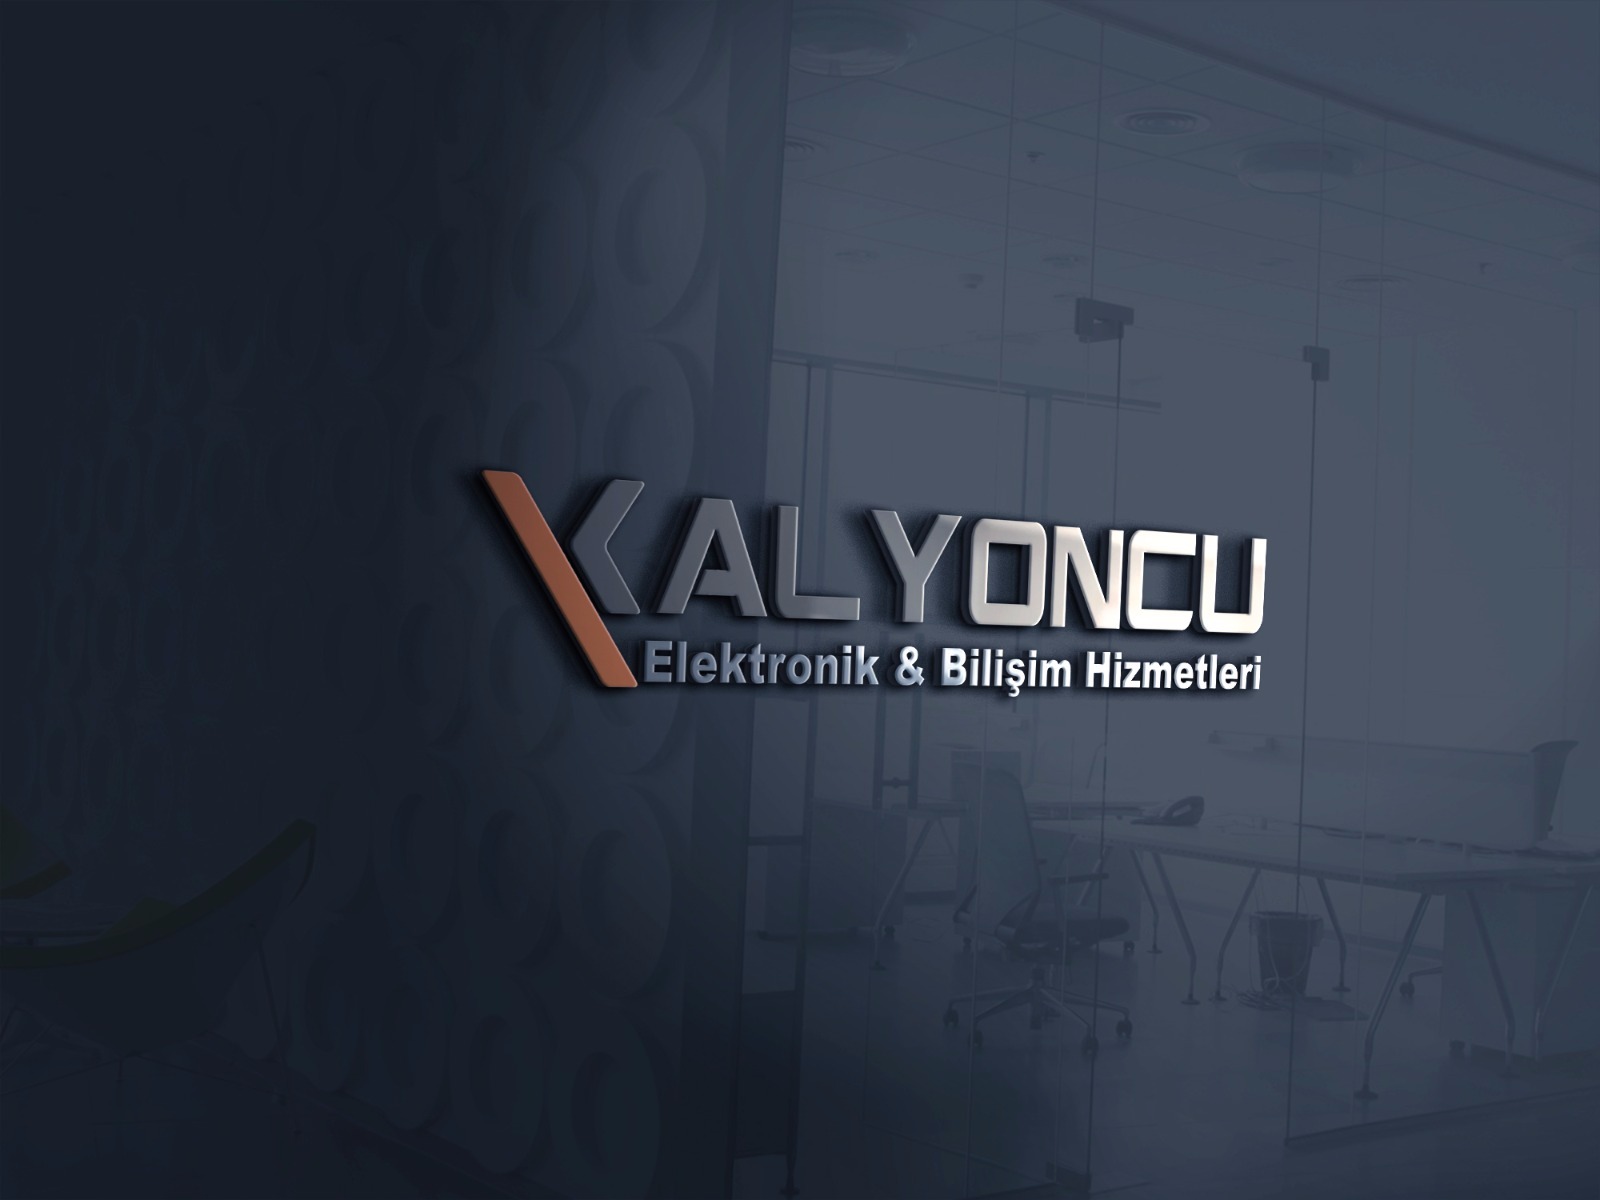 Kalyoncu_Elektronik